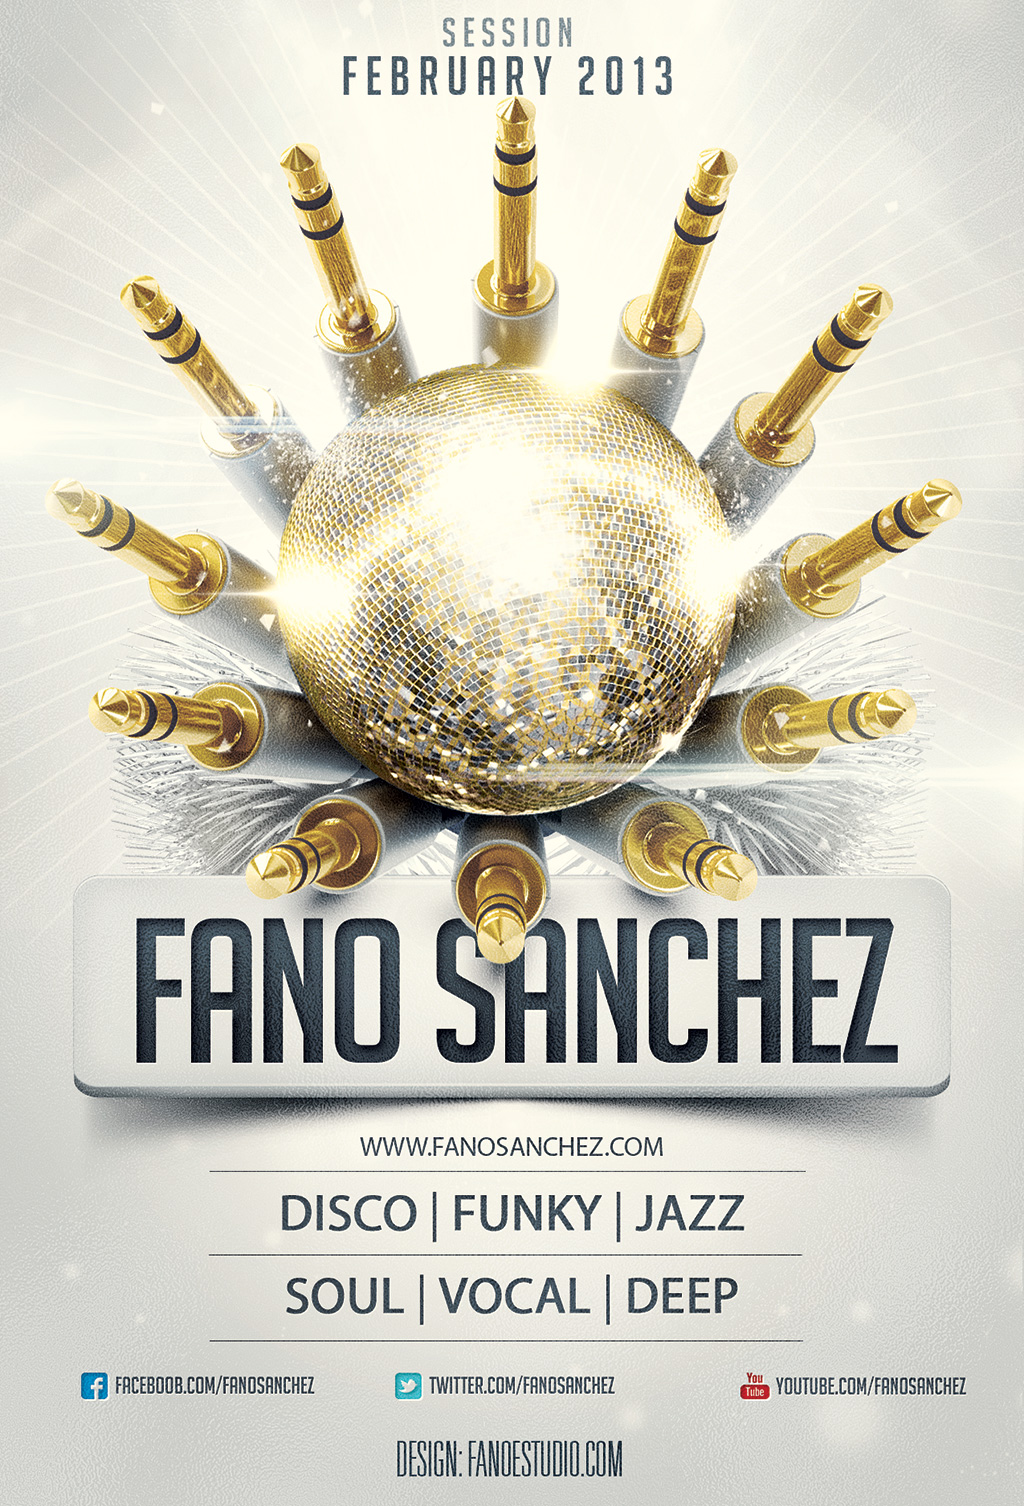 Fano Sánchez – Session Febrero 2013